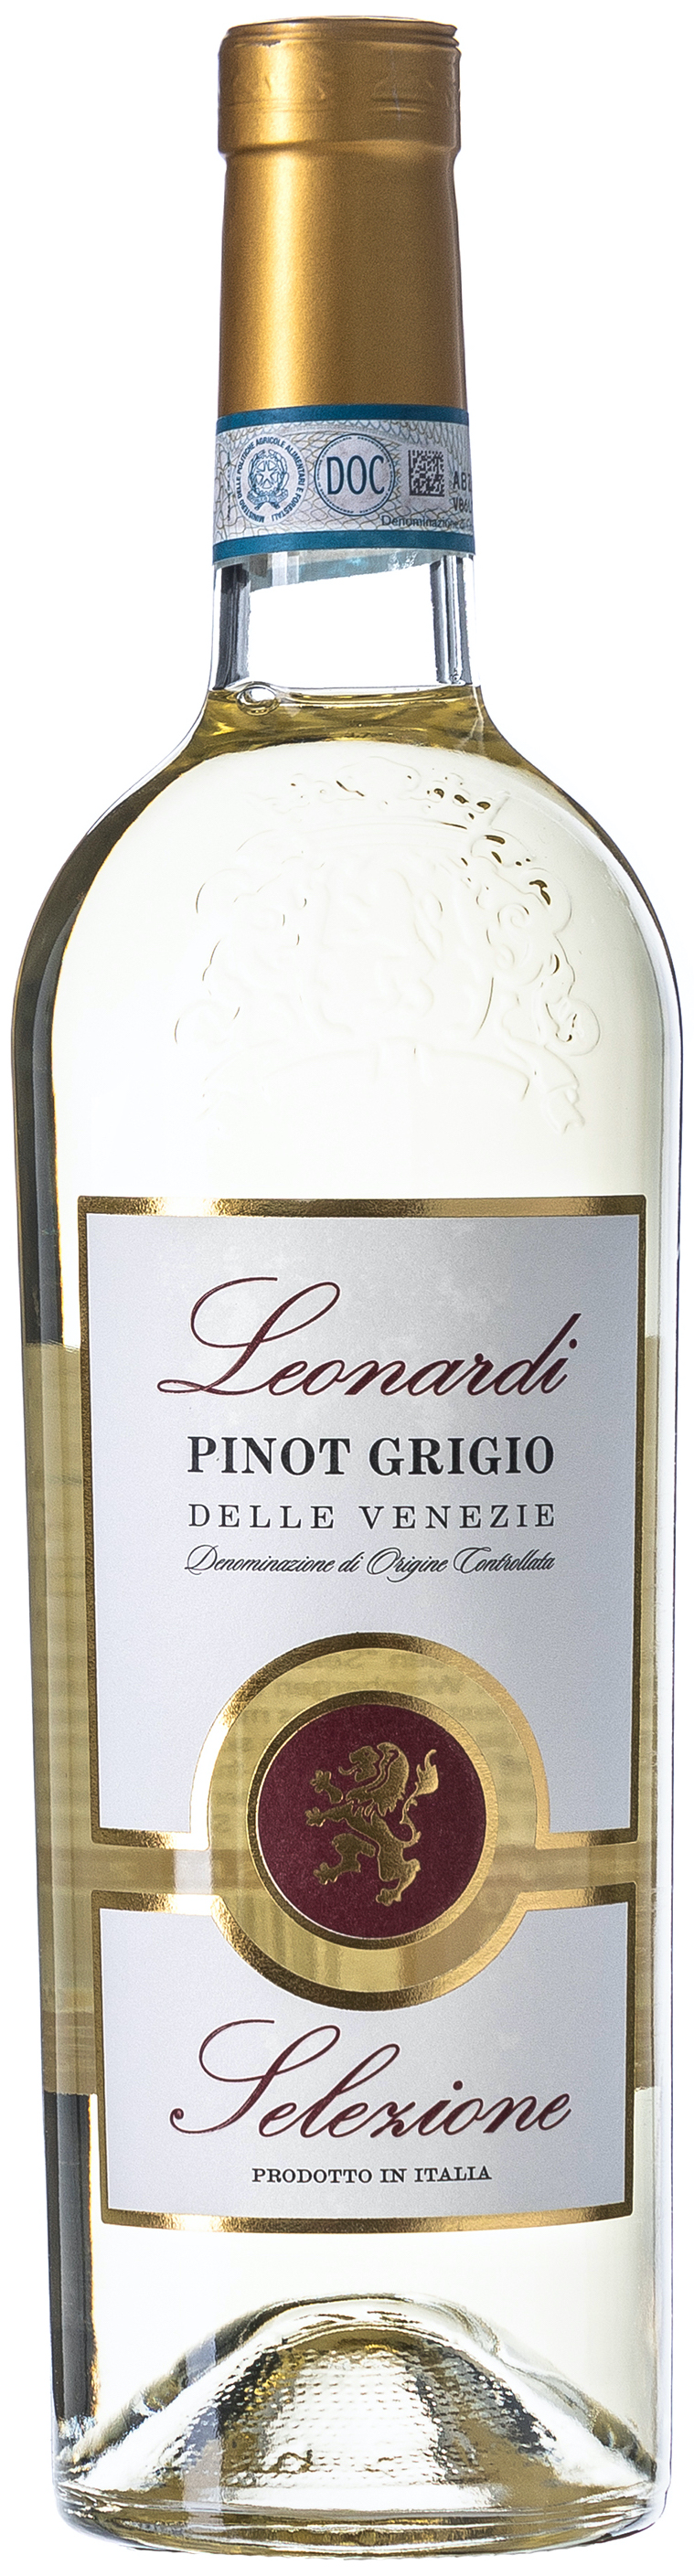 Leonardi Selezione Pinot Grigio Delle Venezie 12% vol. 0,75L